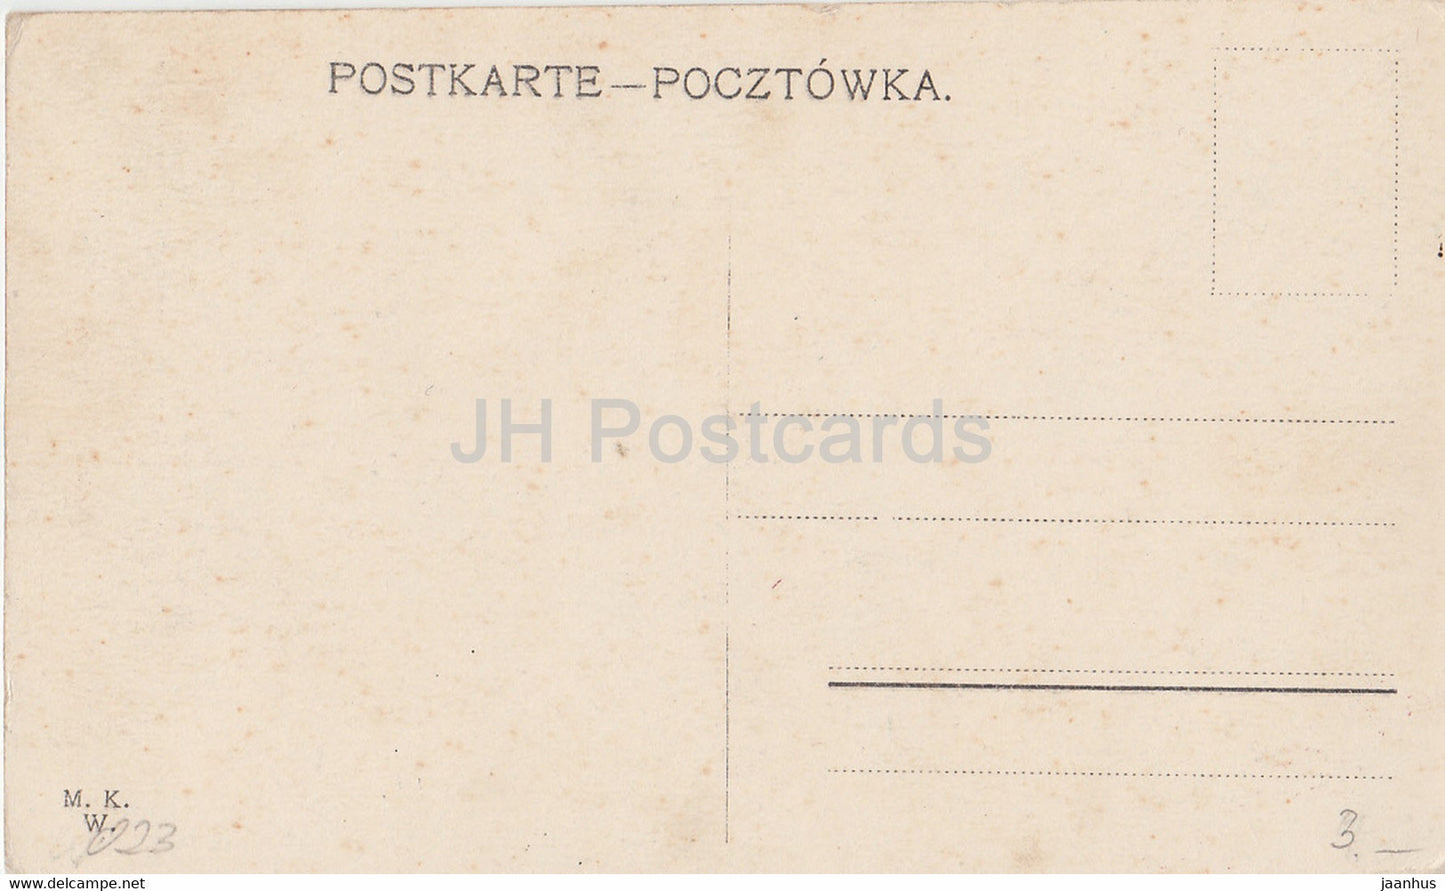 Warschau - Kierbedz Brucke - Warschau - Most Kierbedzia - bridge - old postcard - Poland - unused